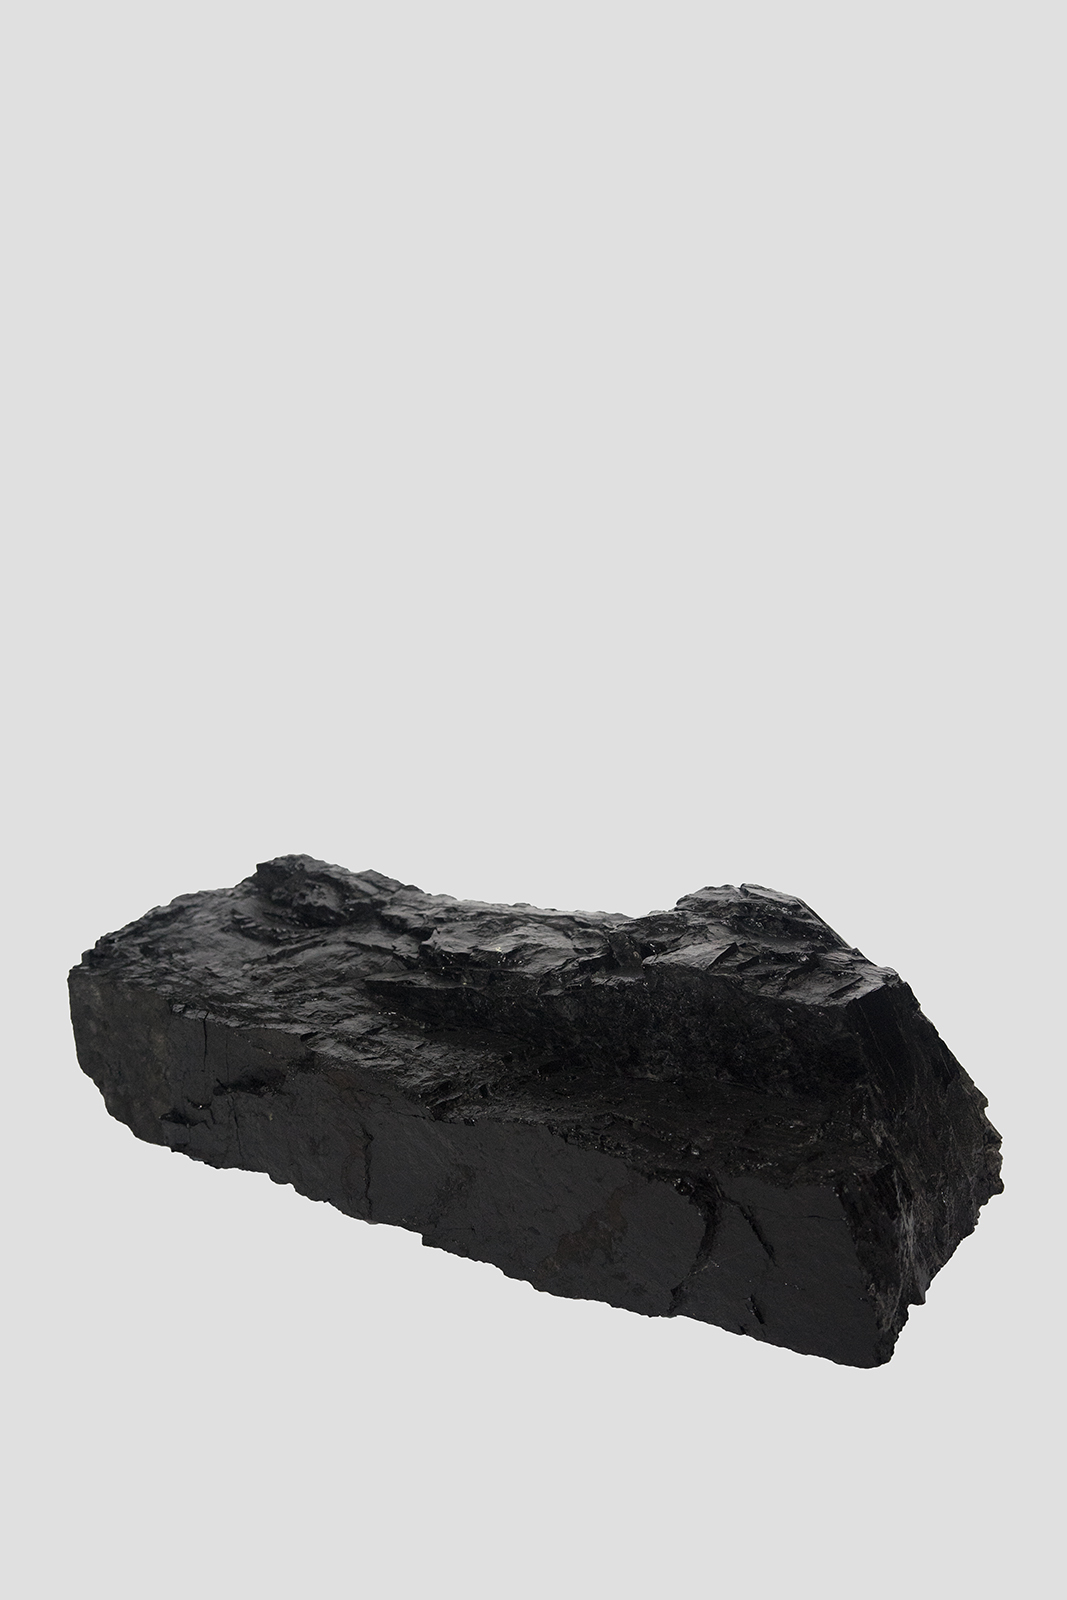 Кам’яне вугілля, виробниче об’єднання «Лисичанськвугілля»/ Black coal, Lysychanskvuhillia